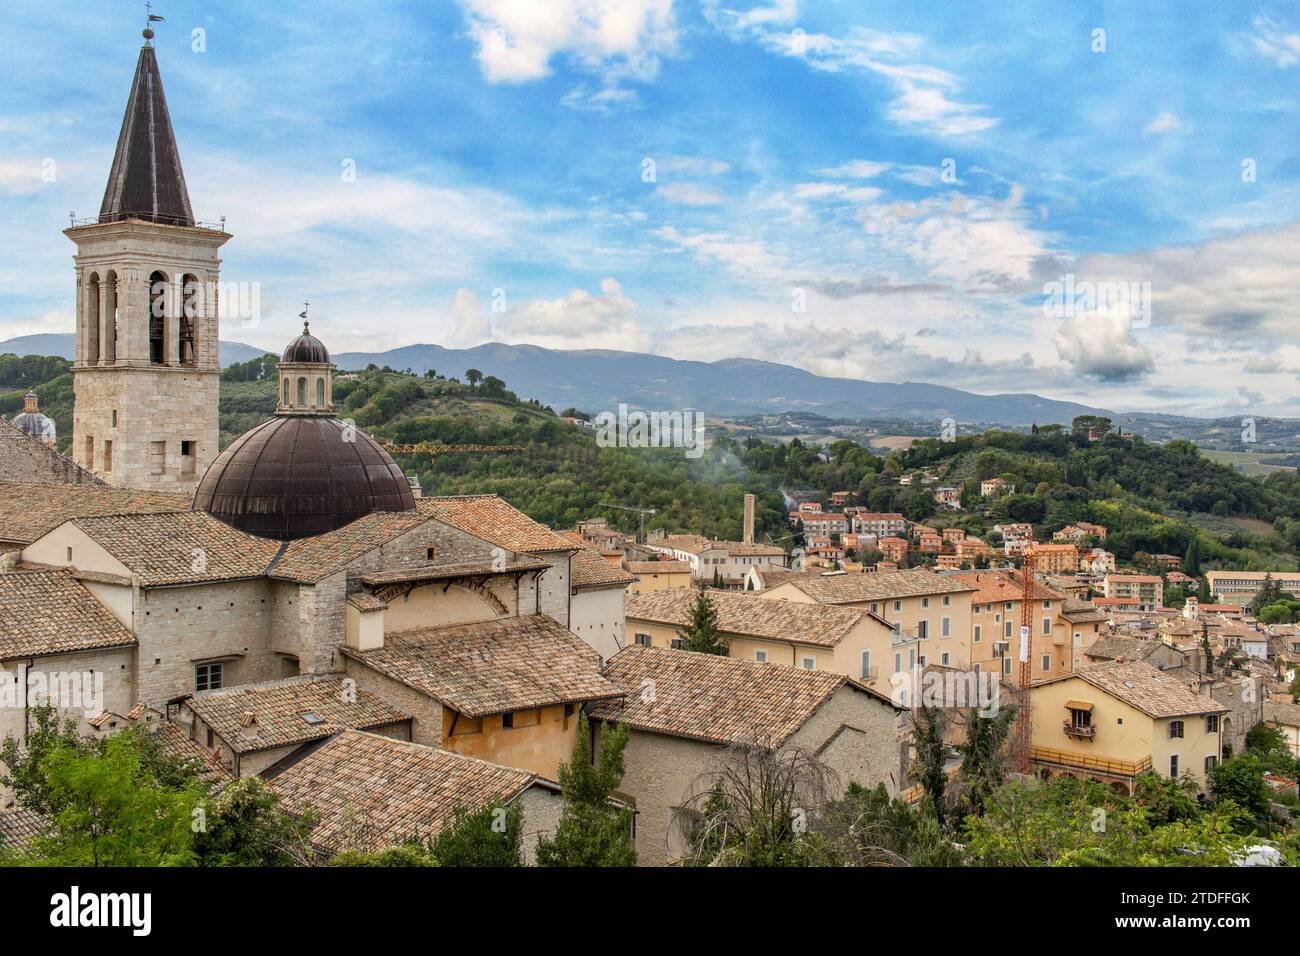 Spoleto, Italia - uno dei borghi più belli dell'Italia centrale, Spoleto mostra una meravigliosa città vecchia, con la sua famosa cattedrale Foto Stock